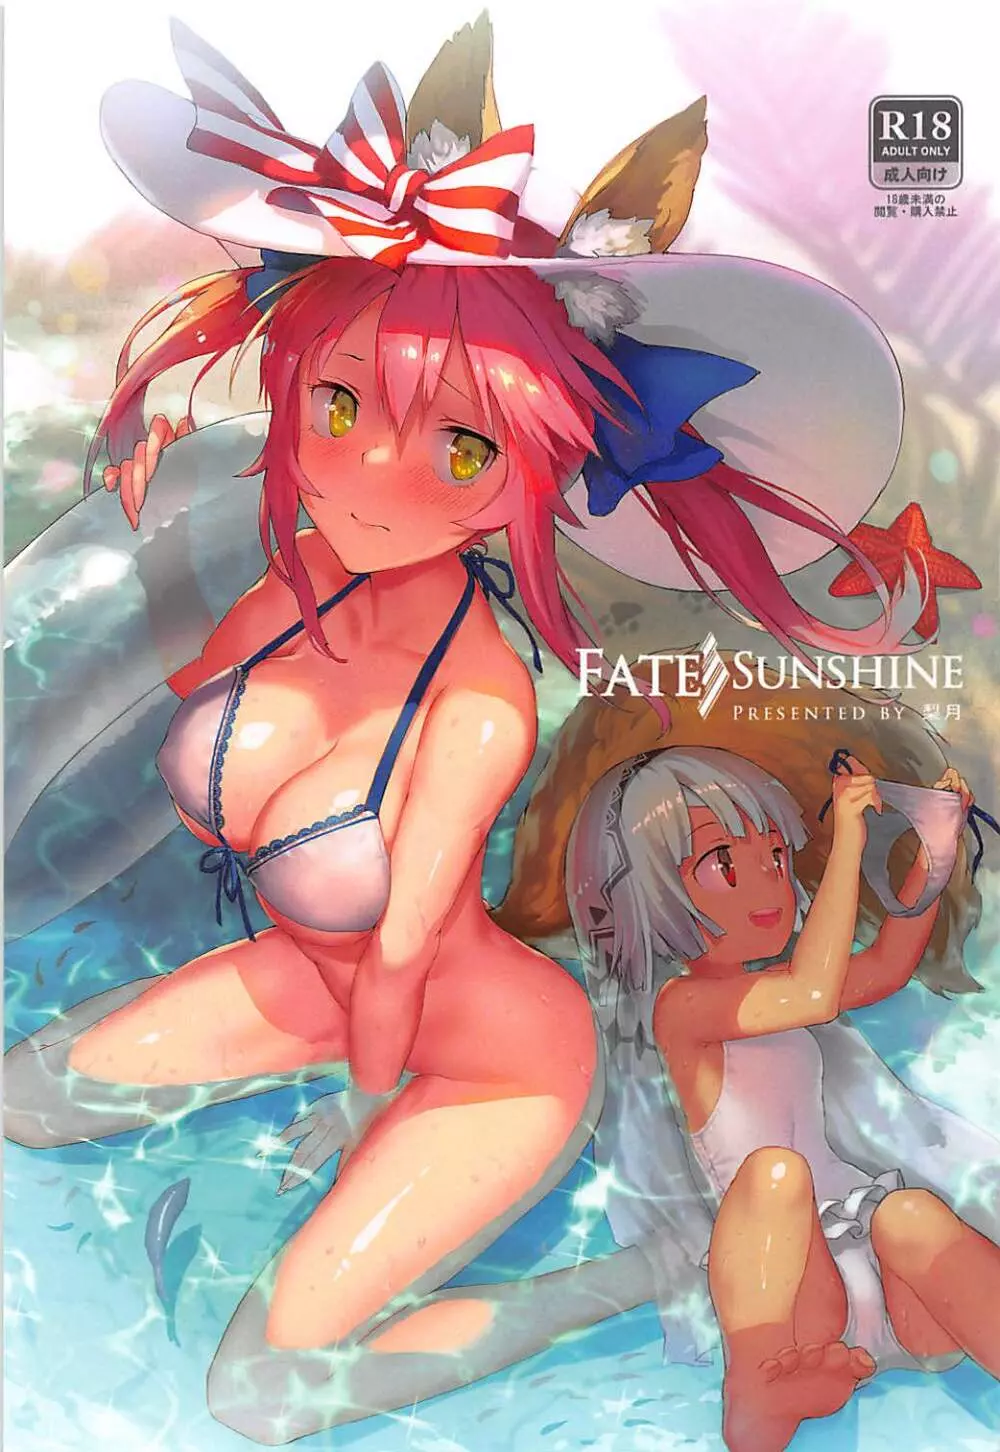 Fate/SUNSHINE